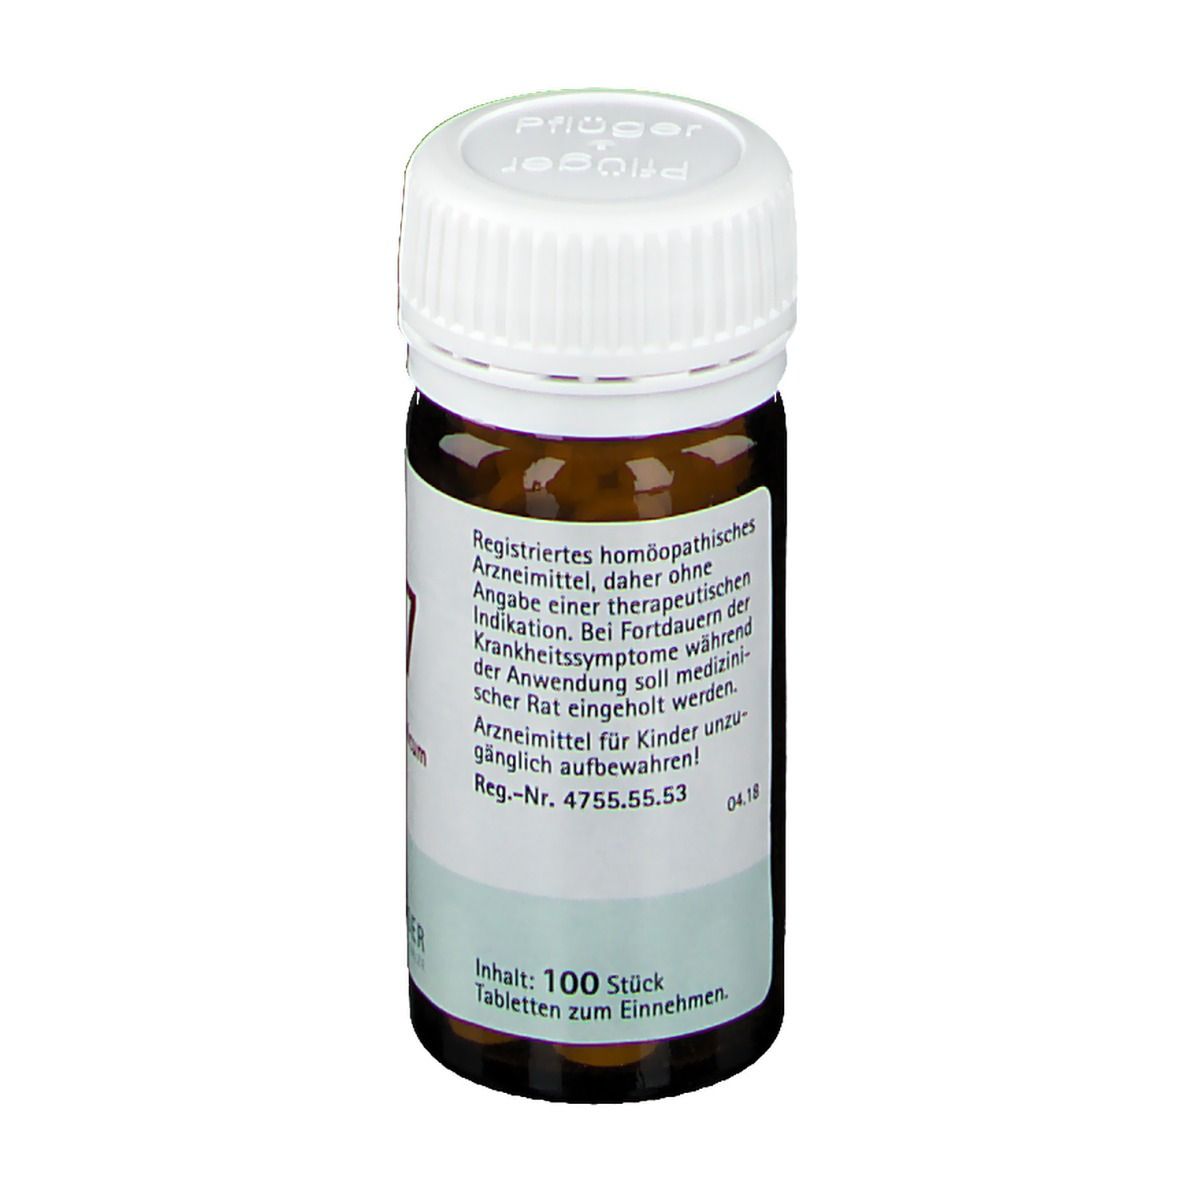 Biochemie Pflüger® Nr. 27 Kalium bichromicum D6 Tabletten